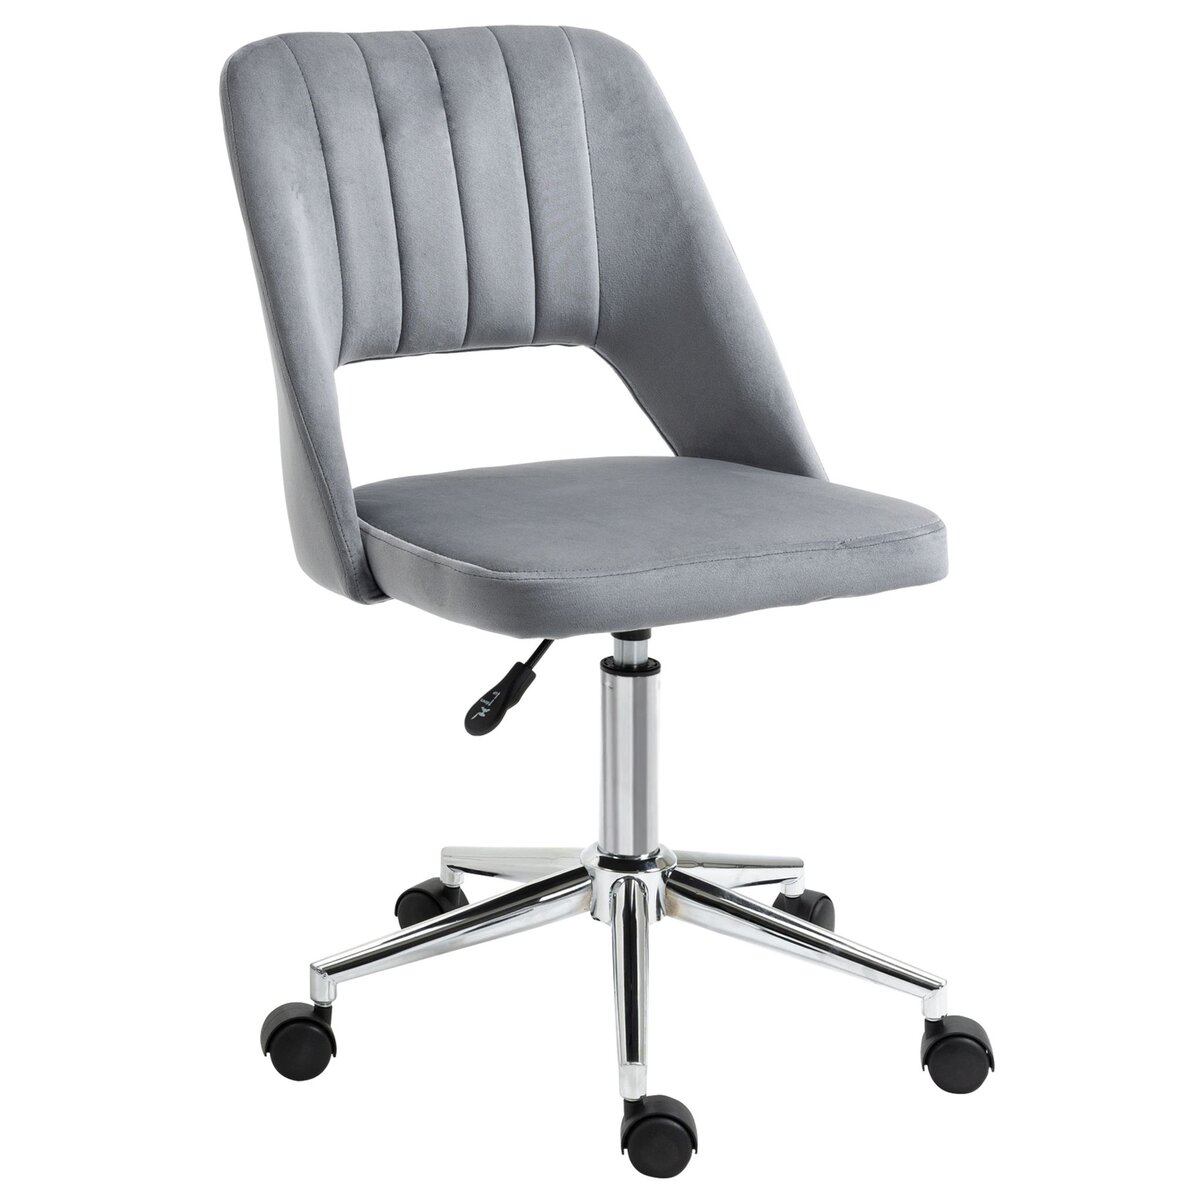 VINSETTO Chaise de bureau design contemporain dossier ergonomique ajouré strié hauteur réglable pivotante 360° piètement chromé velours gris